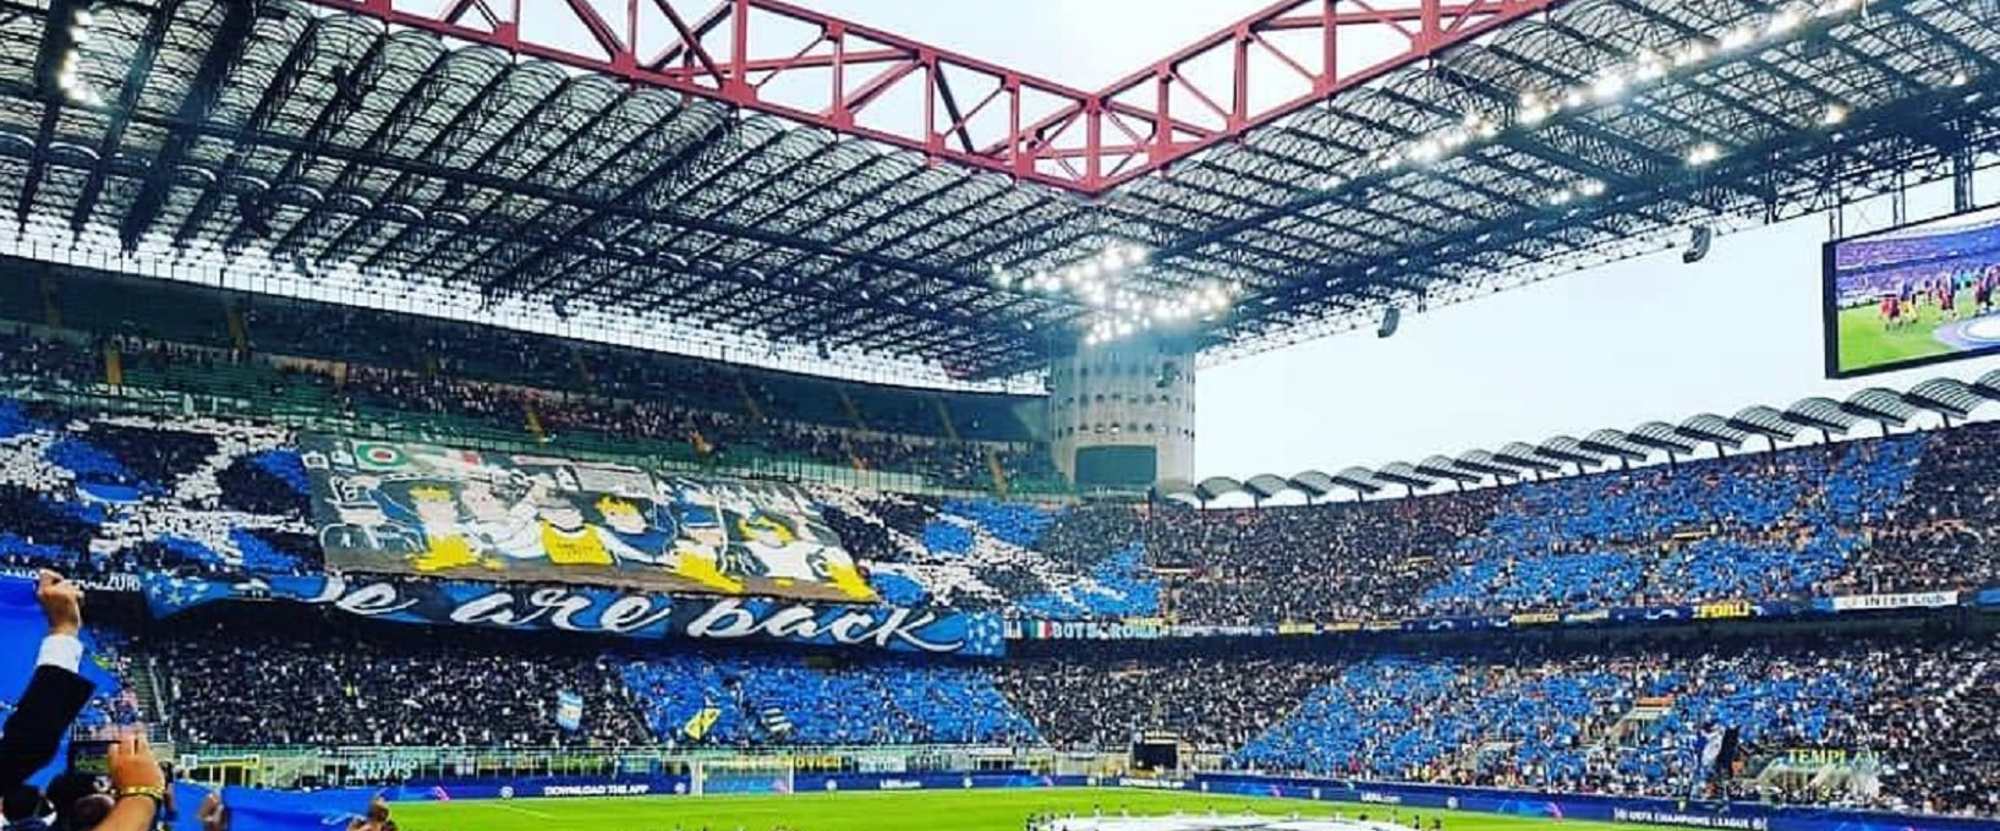 Inter Milan v S.S. Lazio